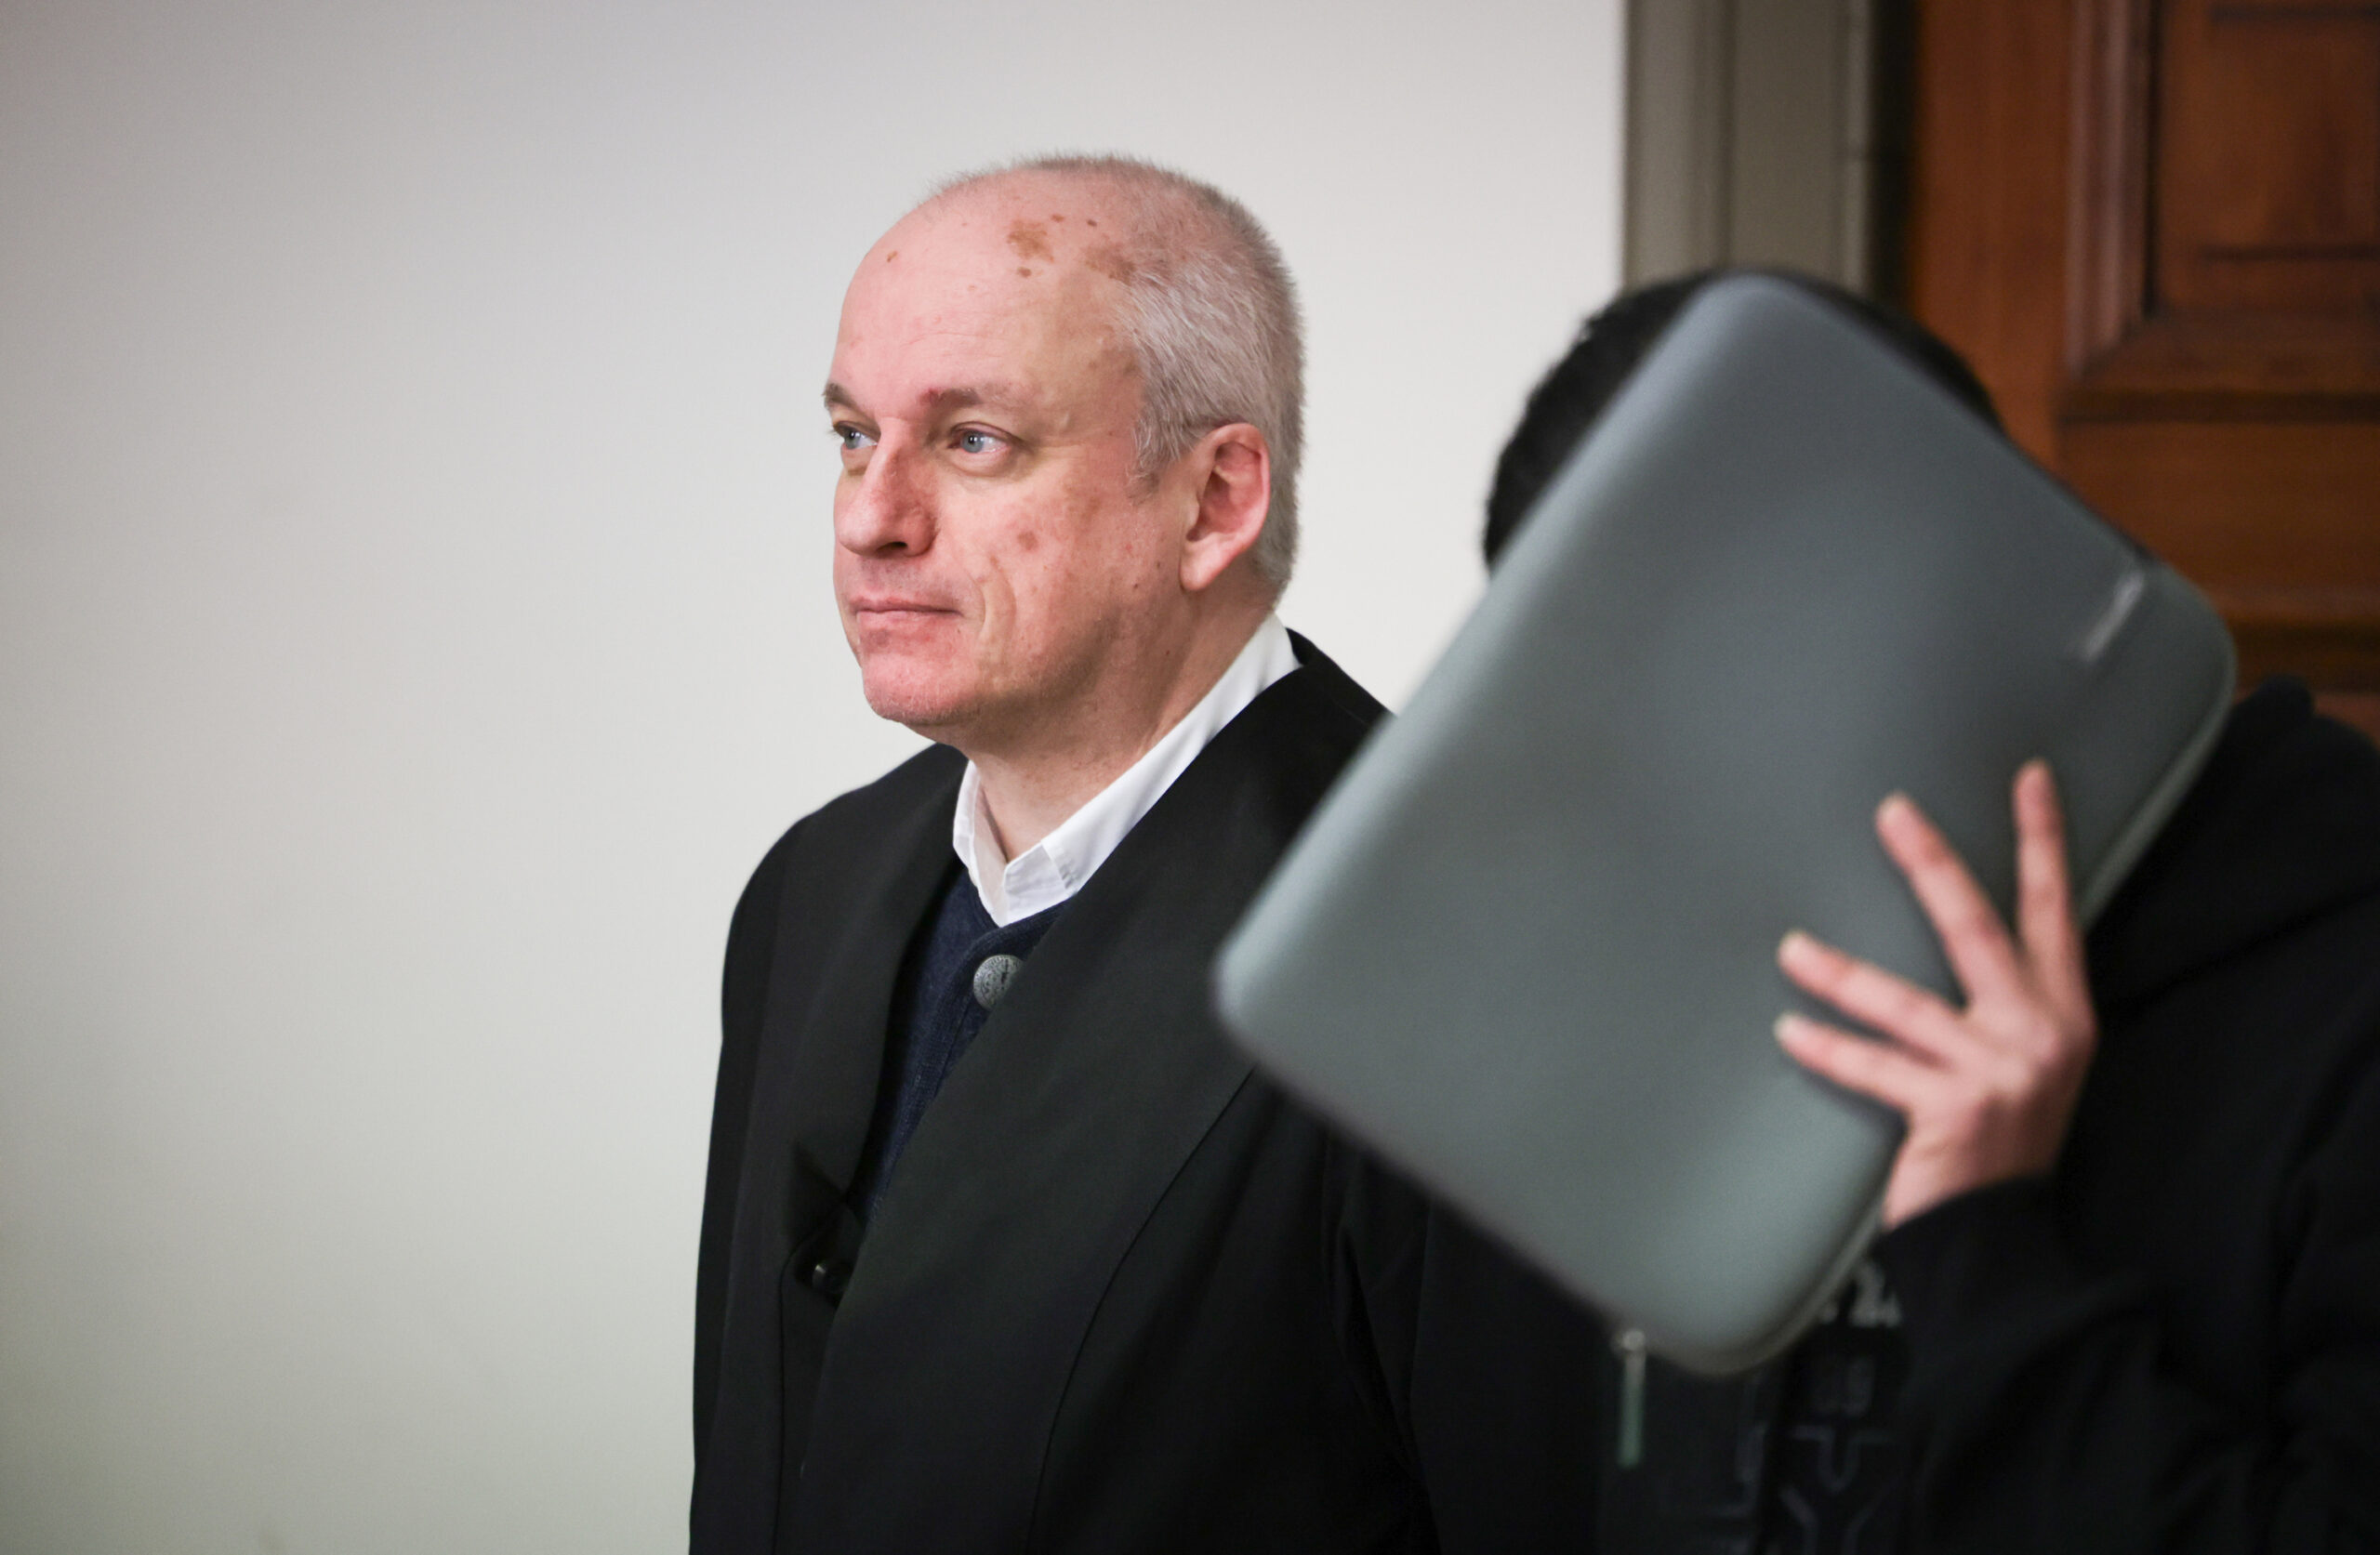 Der 20-jährige Angeklagte, der sich eine Tasche vors Gesicht hält, neben seinem Verteidiger vor dem Hamburger Landgericht.